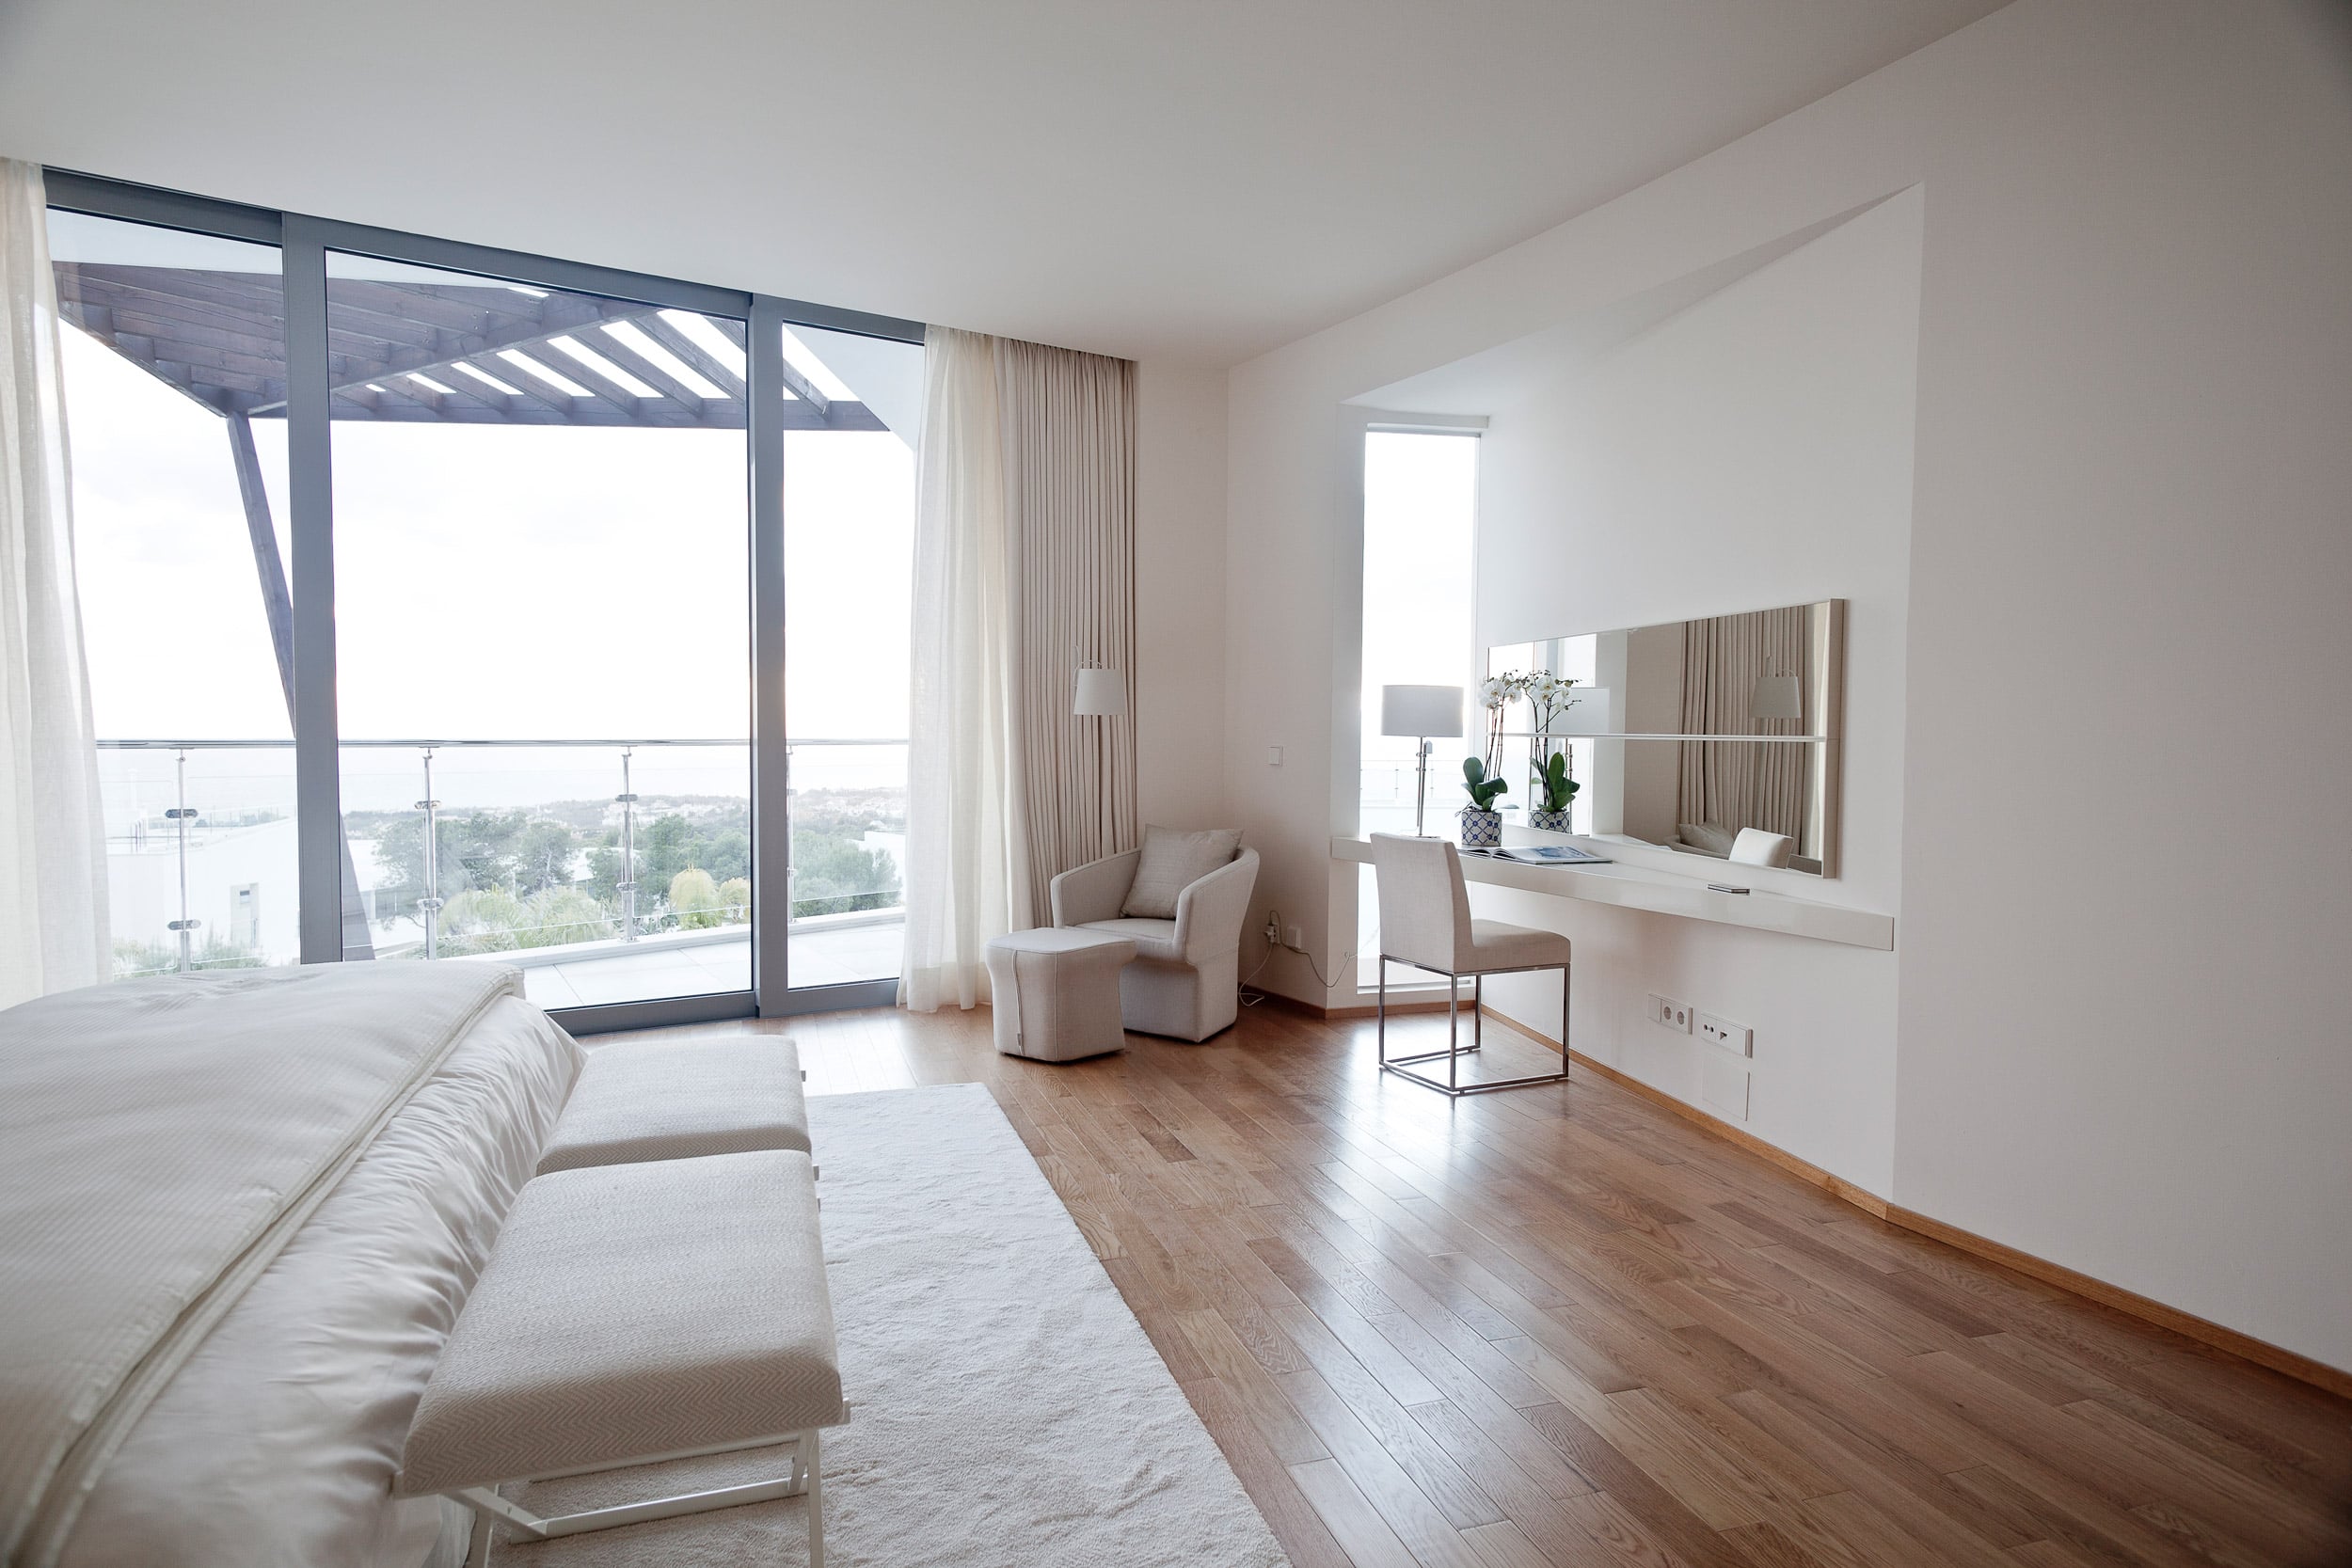 Dormitorio con suelo de madera que ofrece confort y calidez.